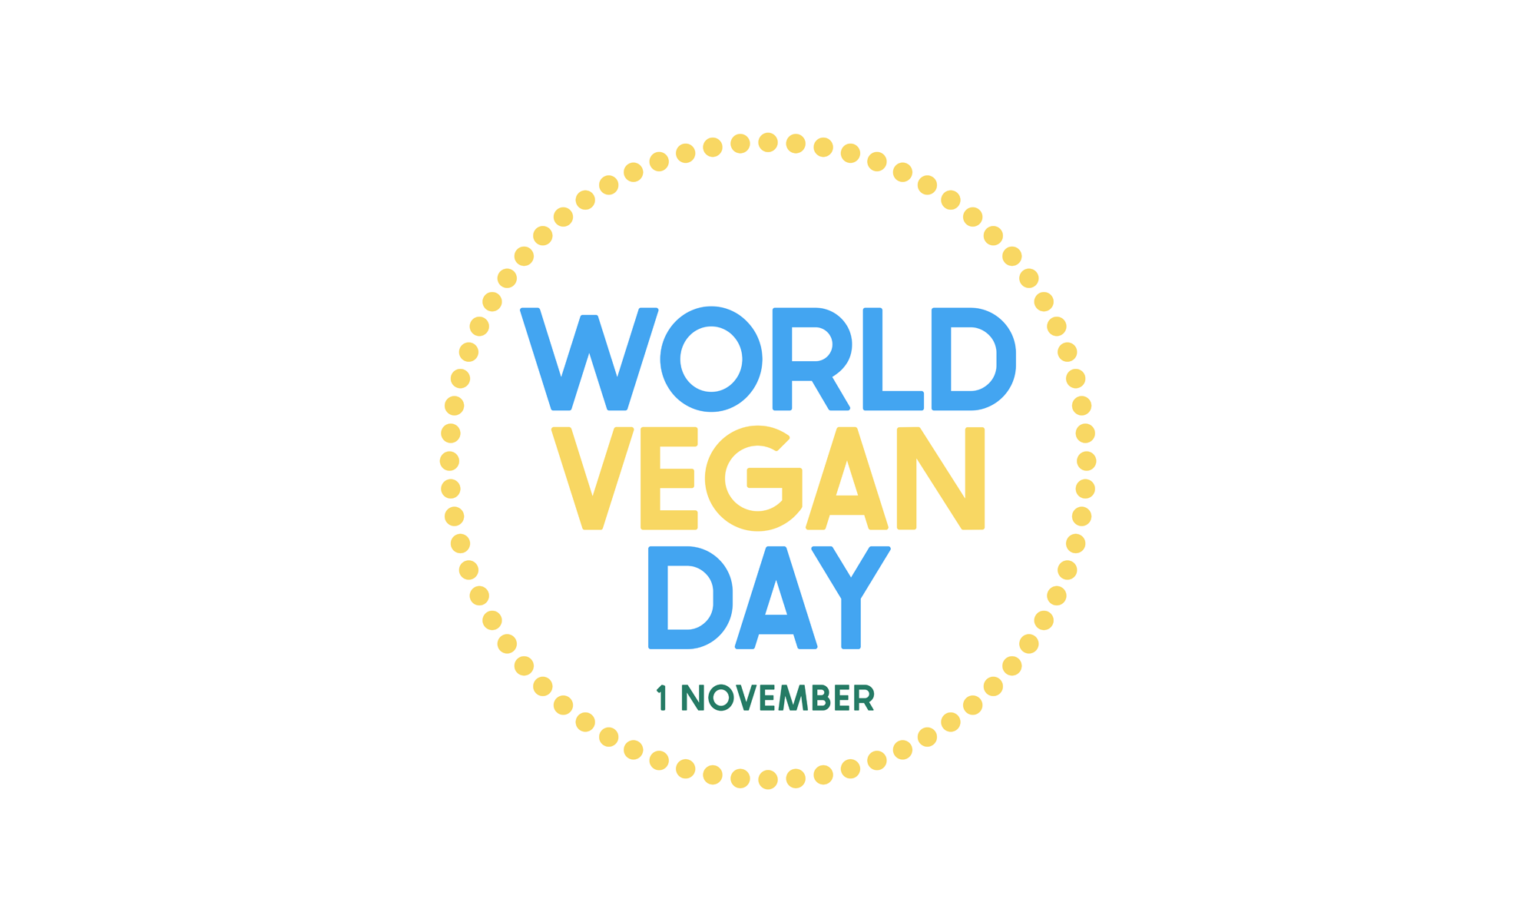 World Vegan Day on 1 November celebrating for a good cause World